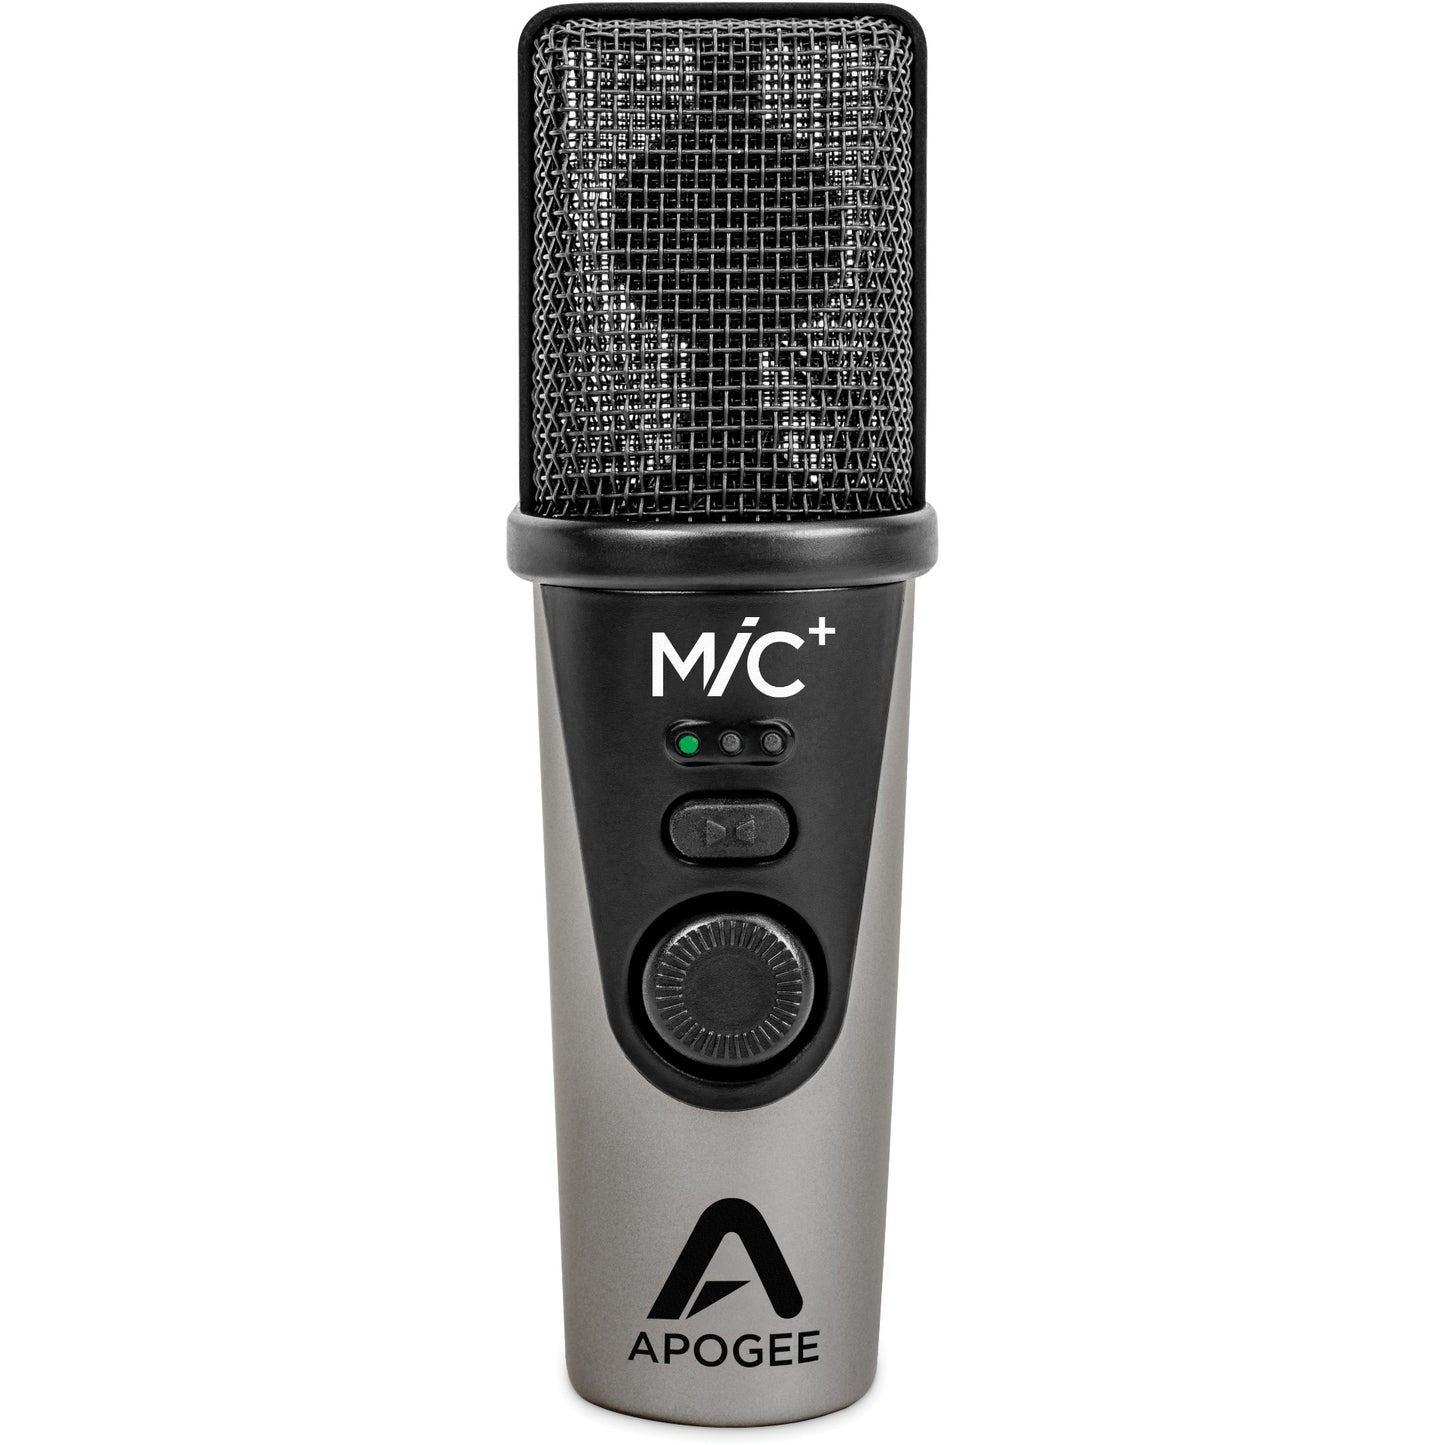 Apogee MIC PLUS USB Microphone for iPad, iPhone, Mac & Windows